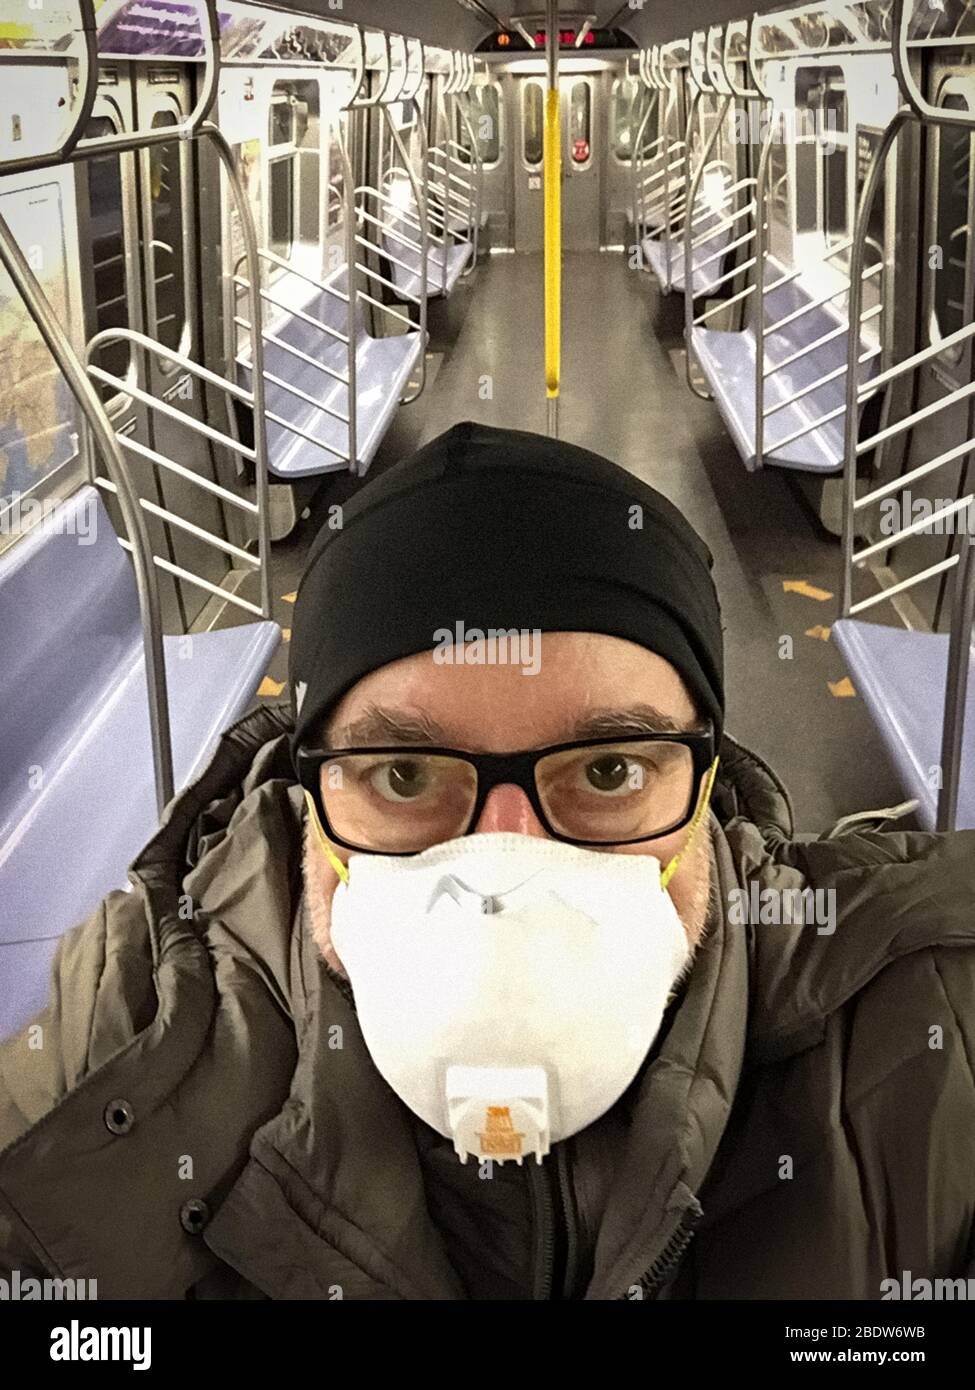 Passage dans le métro pendant la pandémie du coronavirus (COVID-19). Ney York. USA 45, 50, 55, 60, 65 ans Banque D'Images